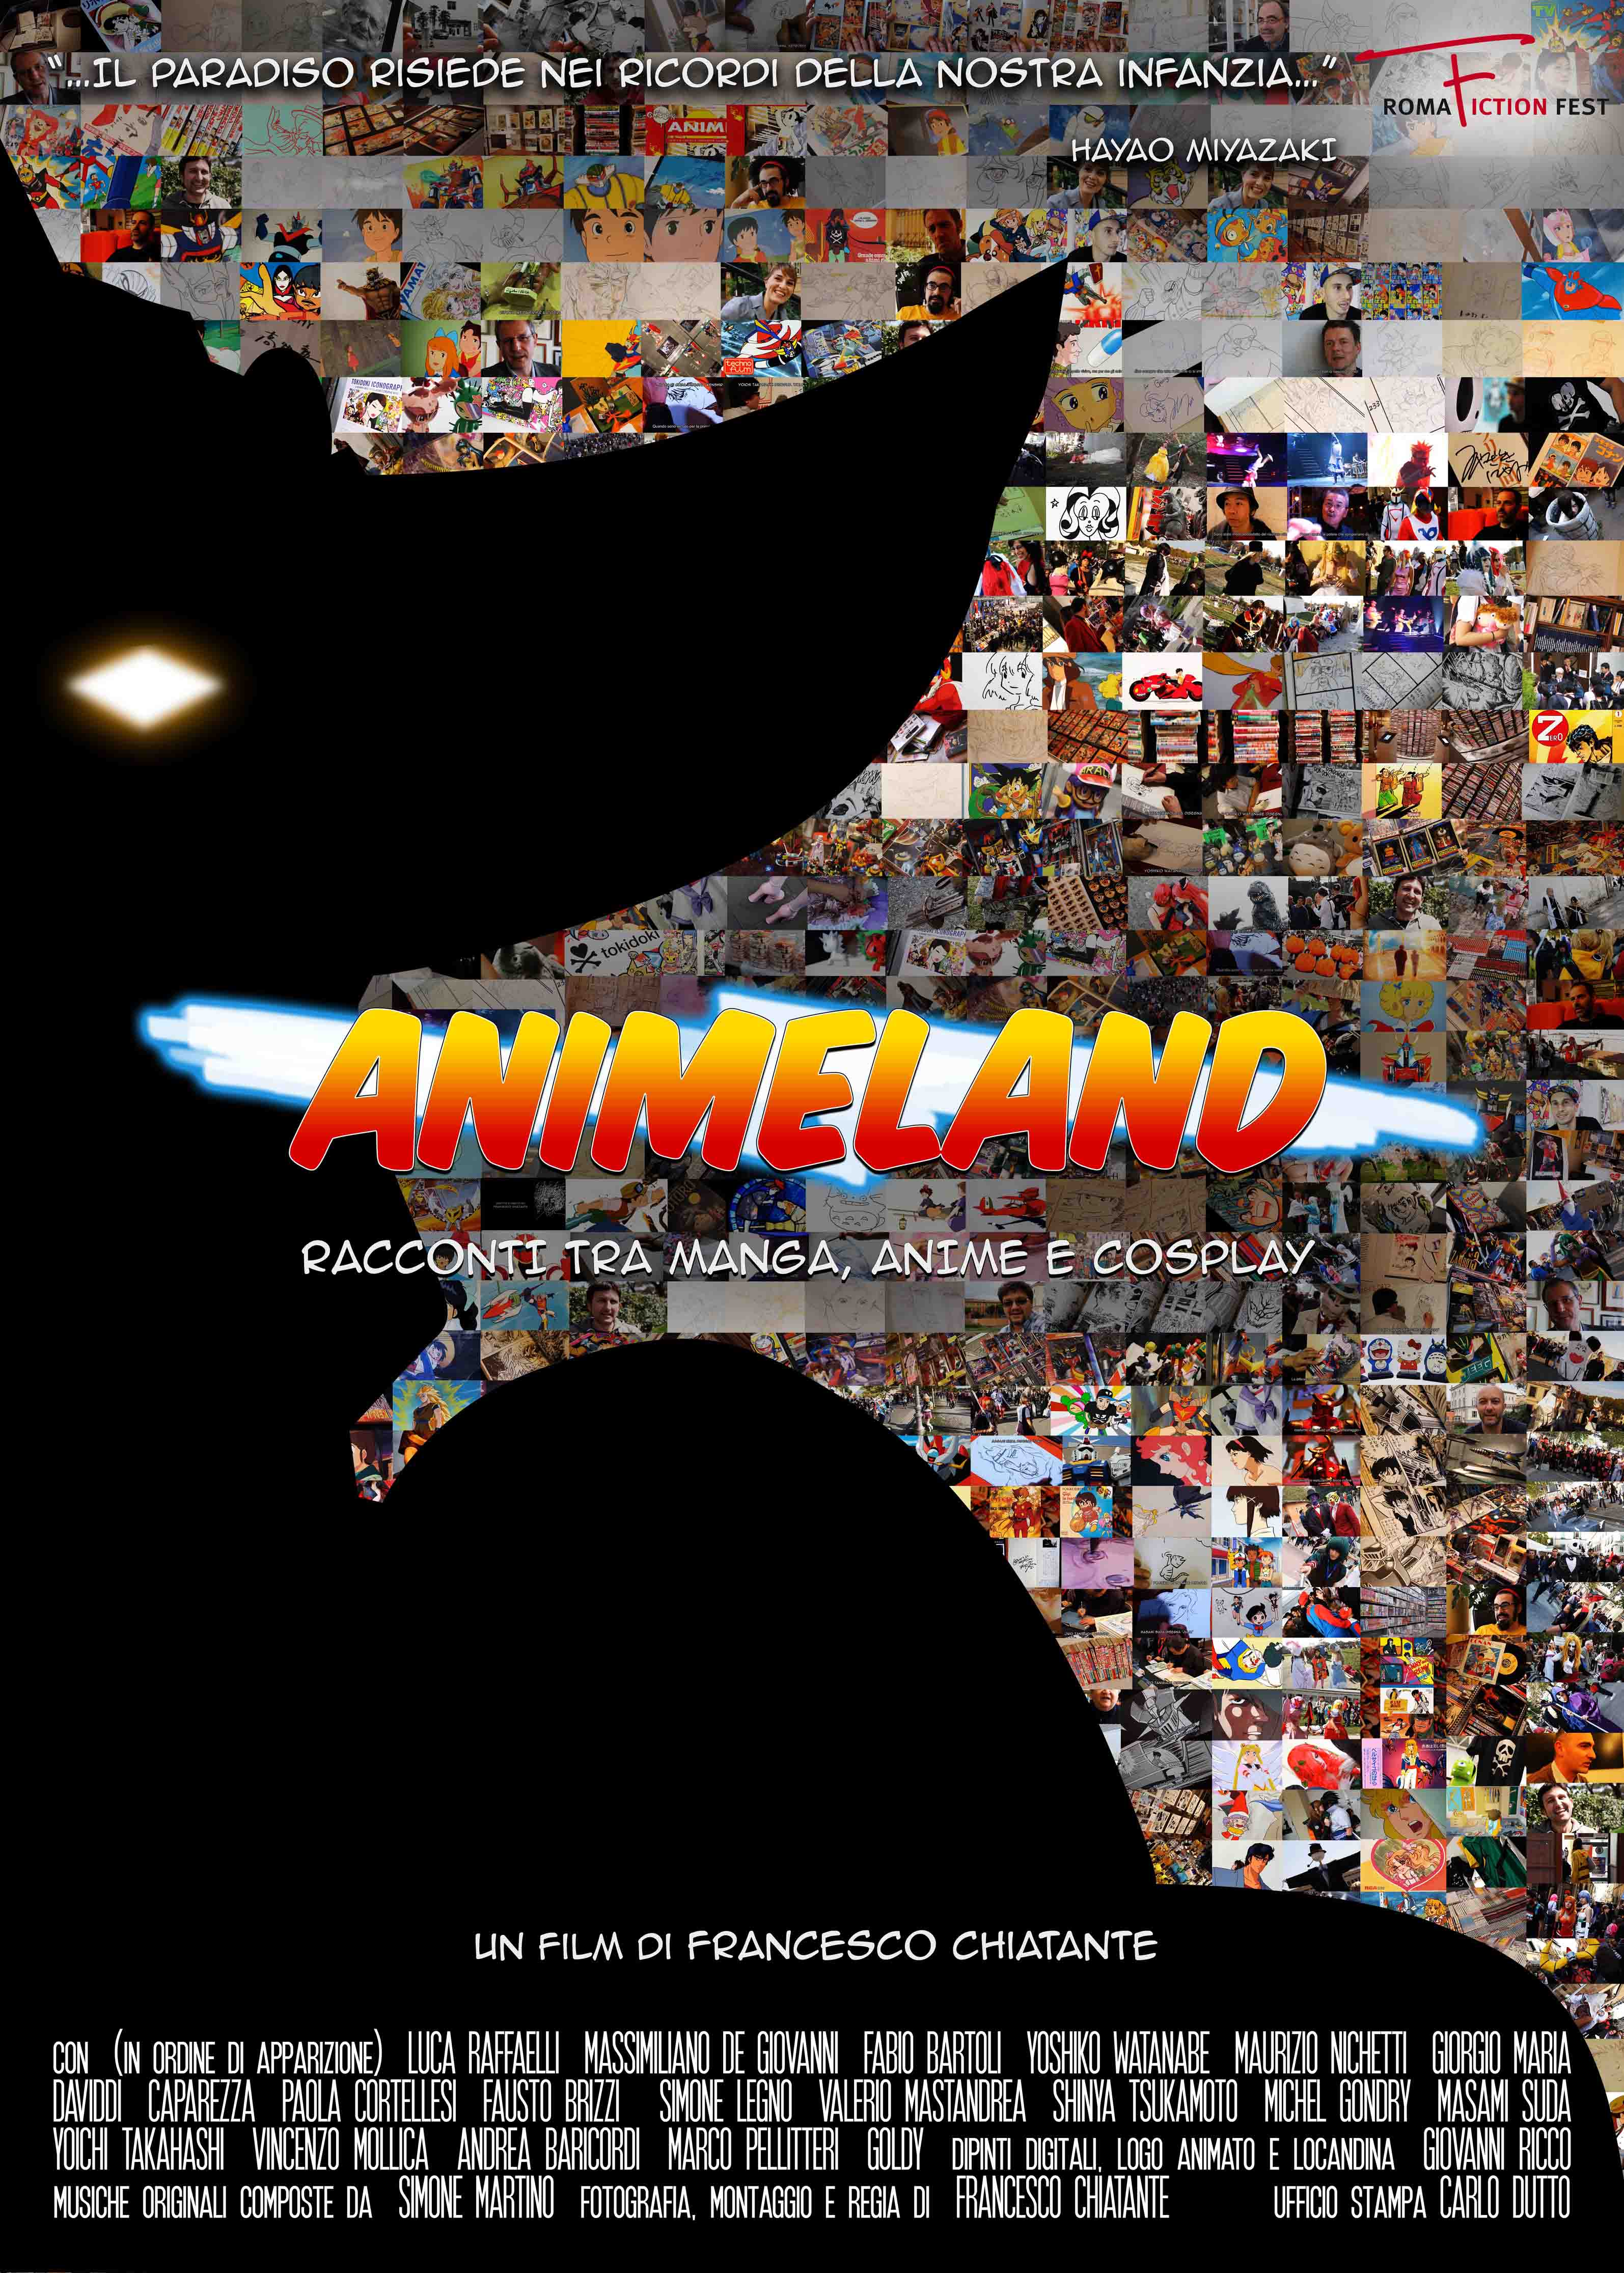 Roma, Isola del Cinema, 12 agosto - proiezione del doc 'Animeland - Racconti tra manga, anime e cosplay' di Francesco Chiatante